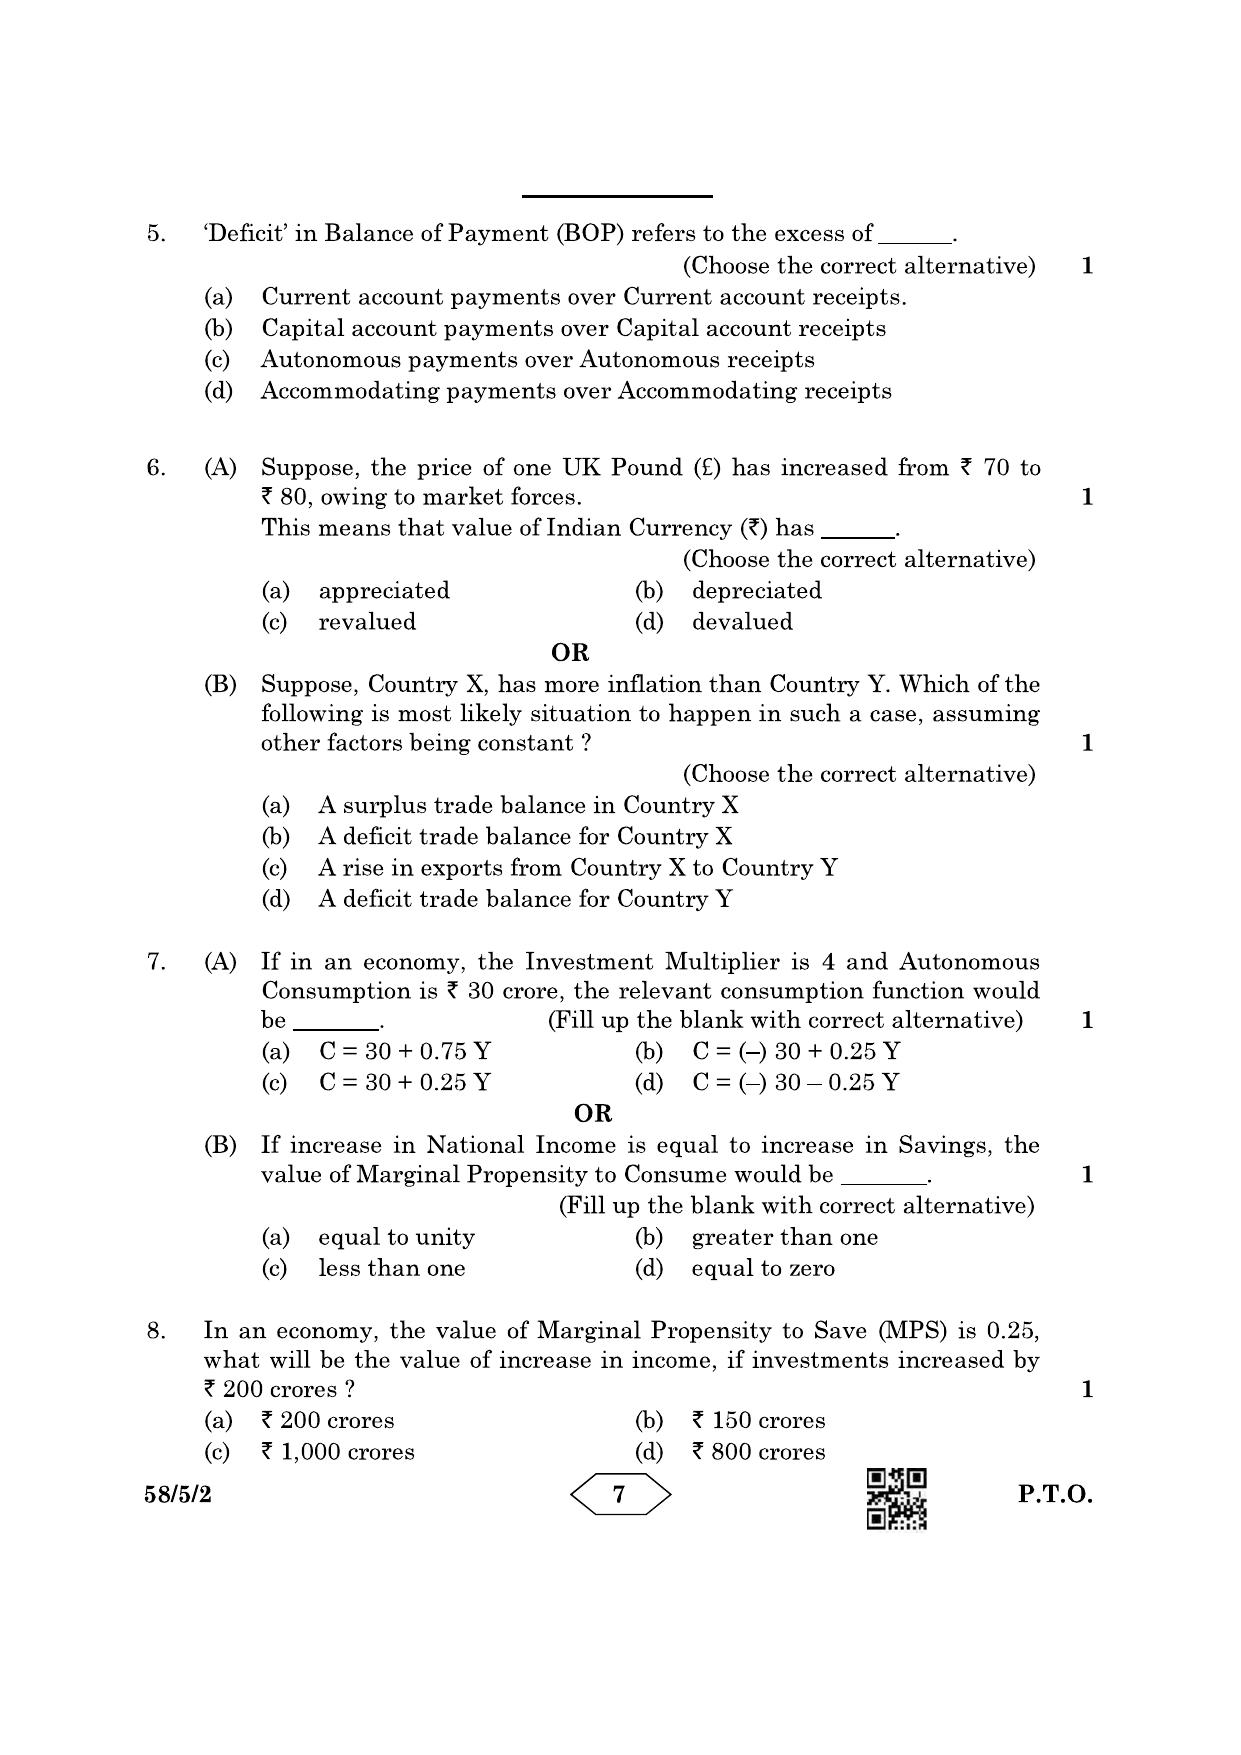 CBSE Class 12 58-5-2 Economics 2023 Question Paper - Page 7